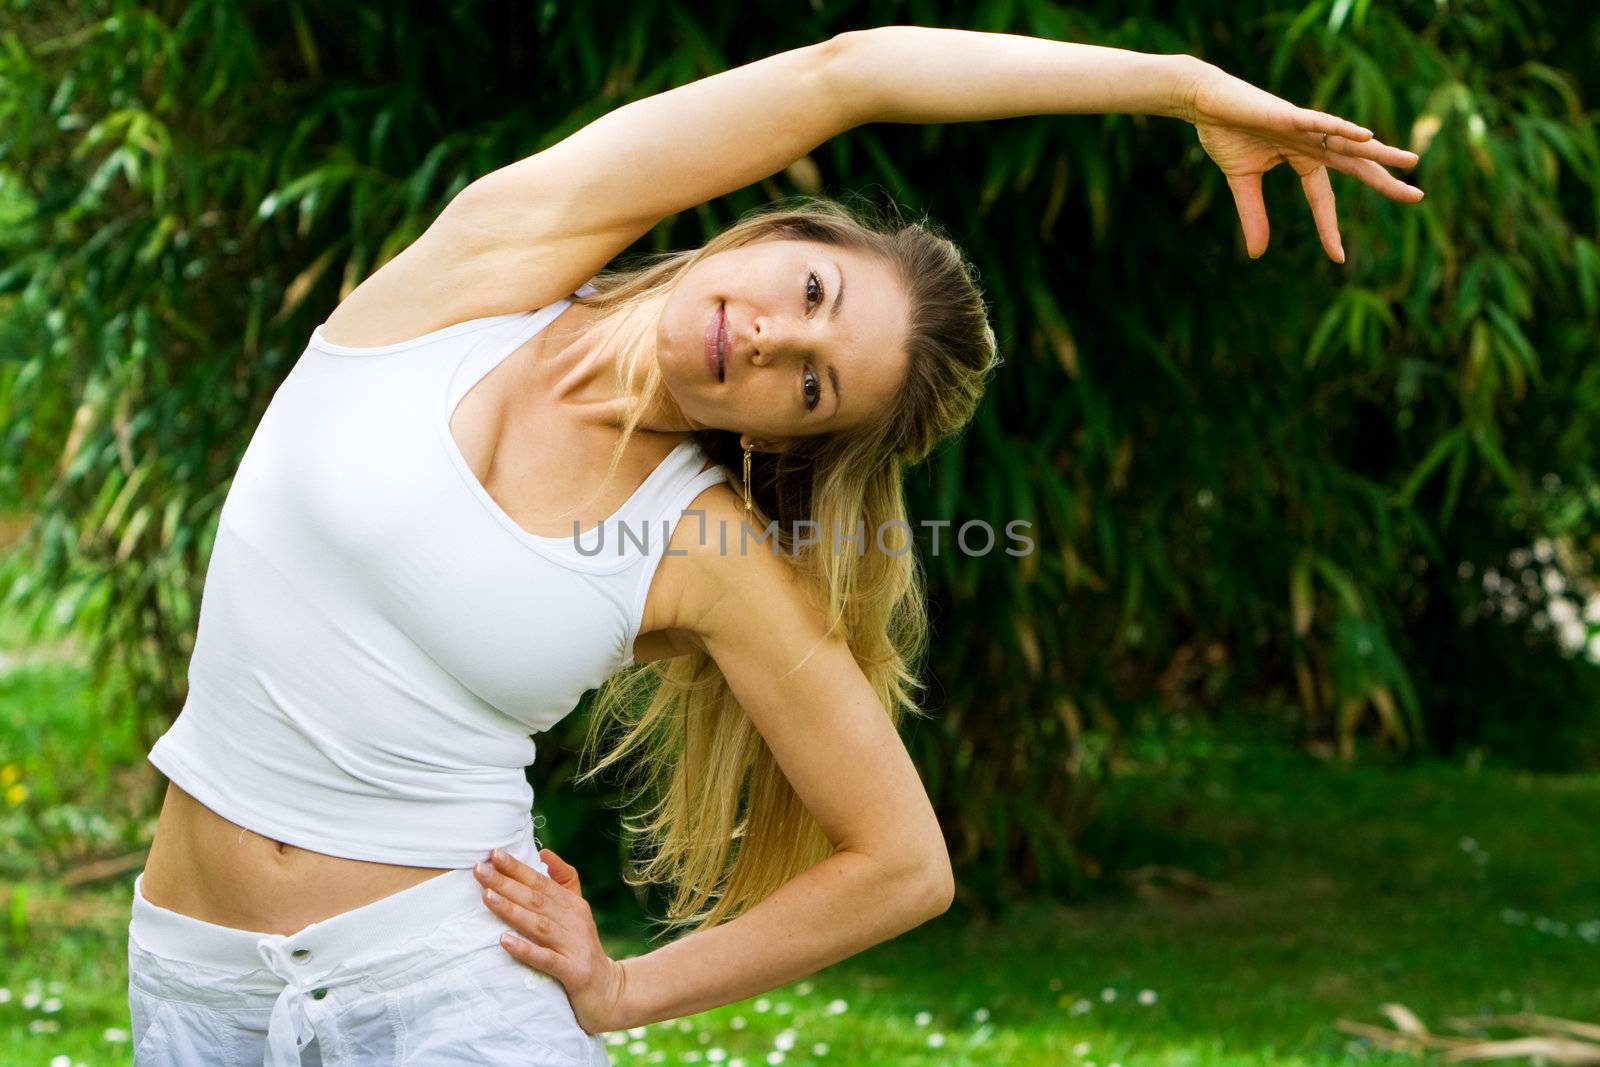 Blonde girl in nature green park exercising yoga, fitness program